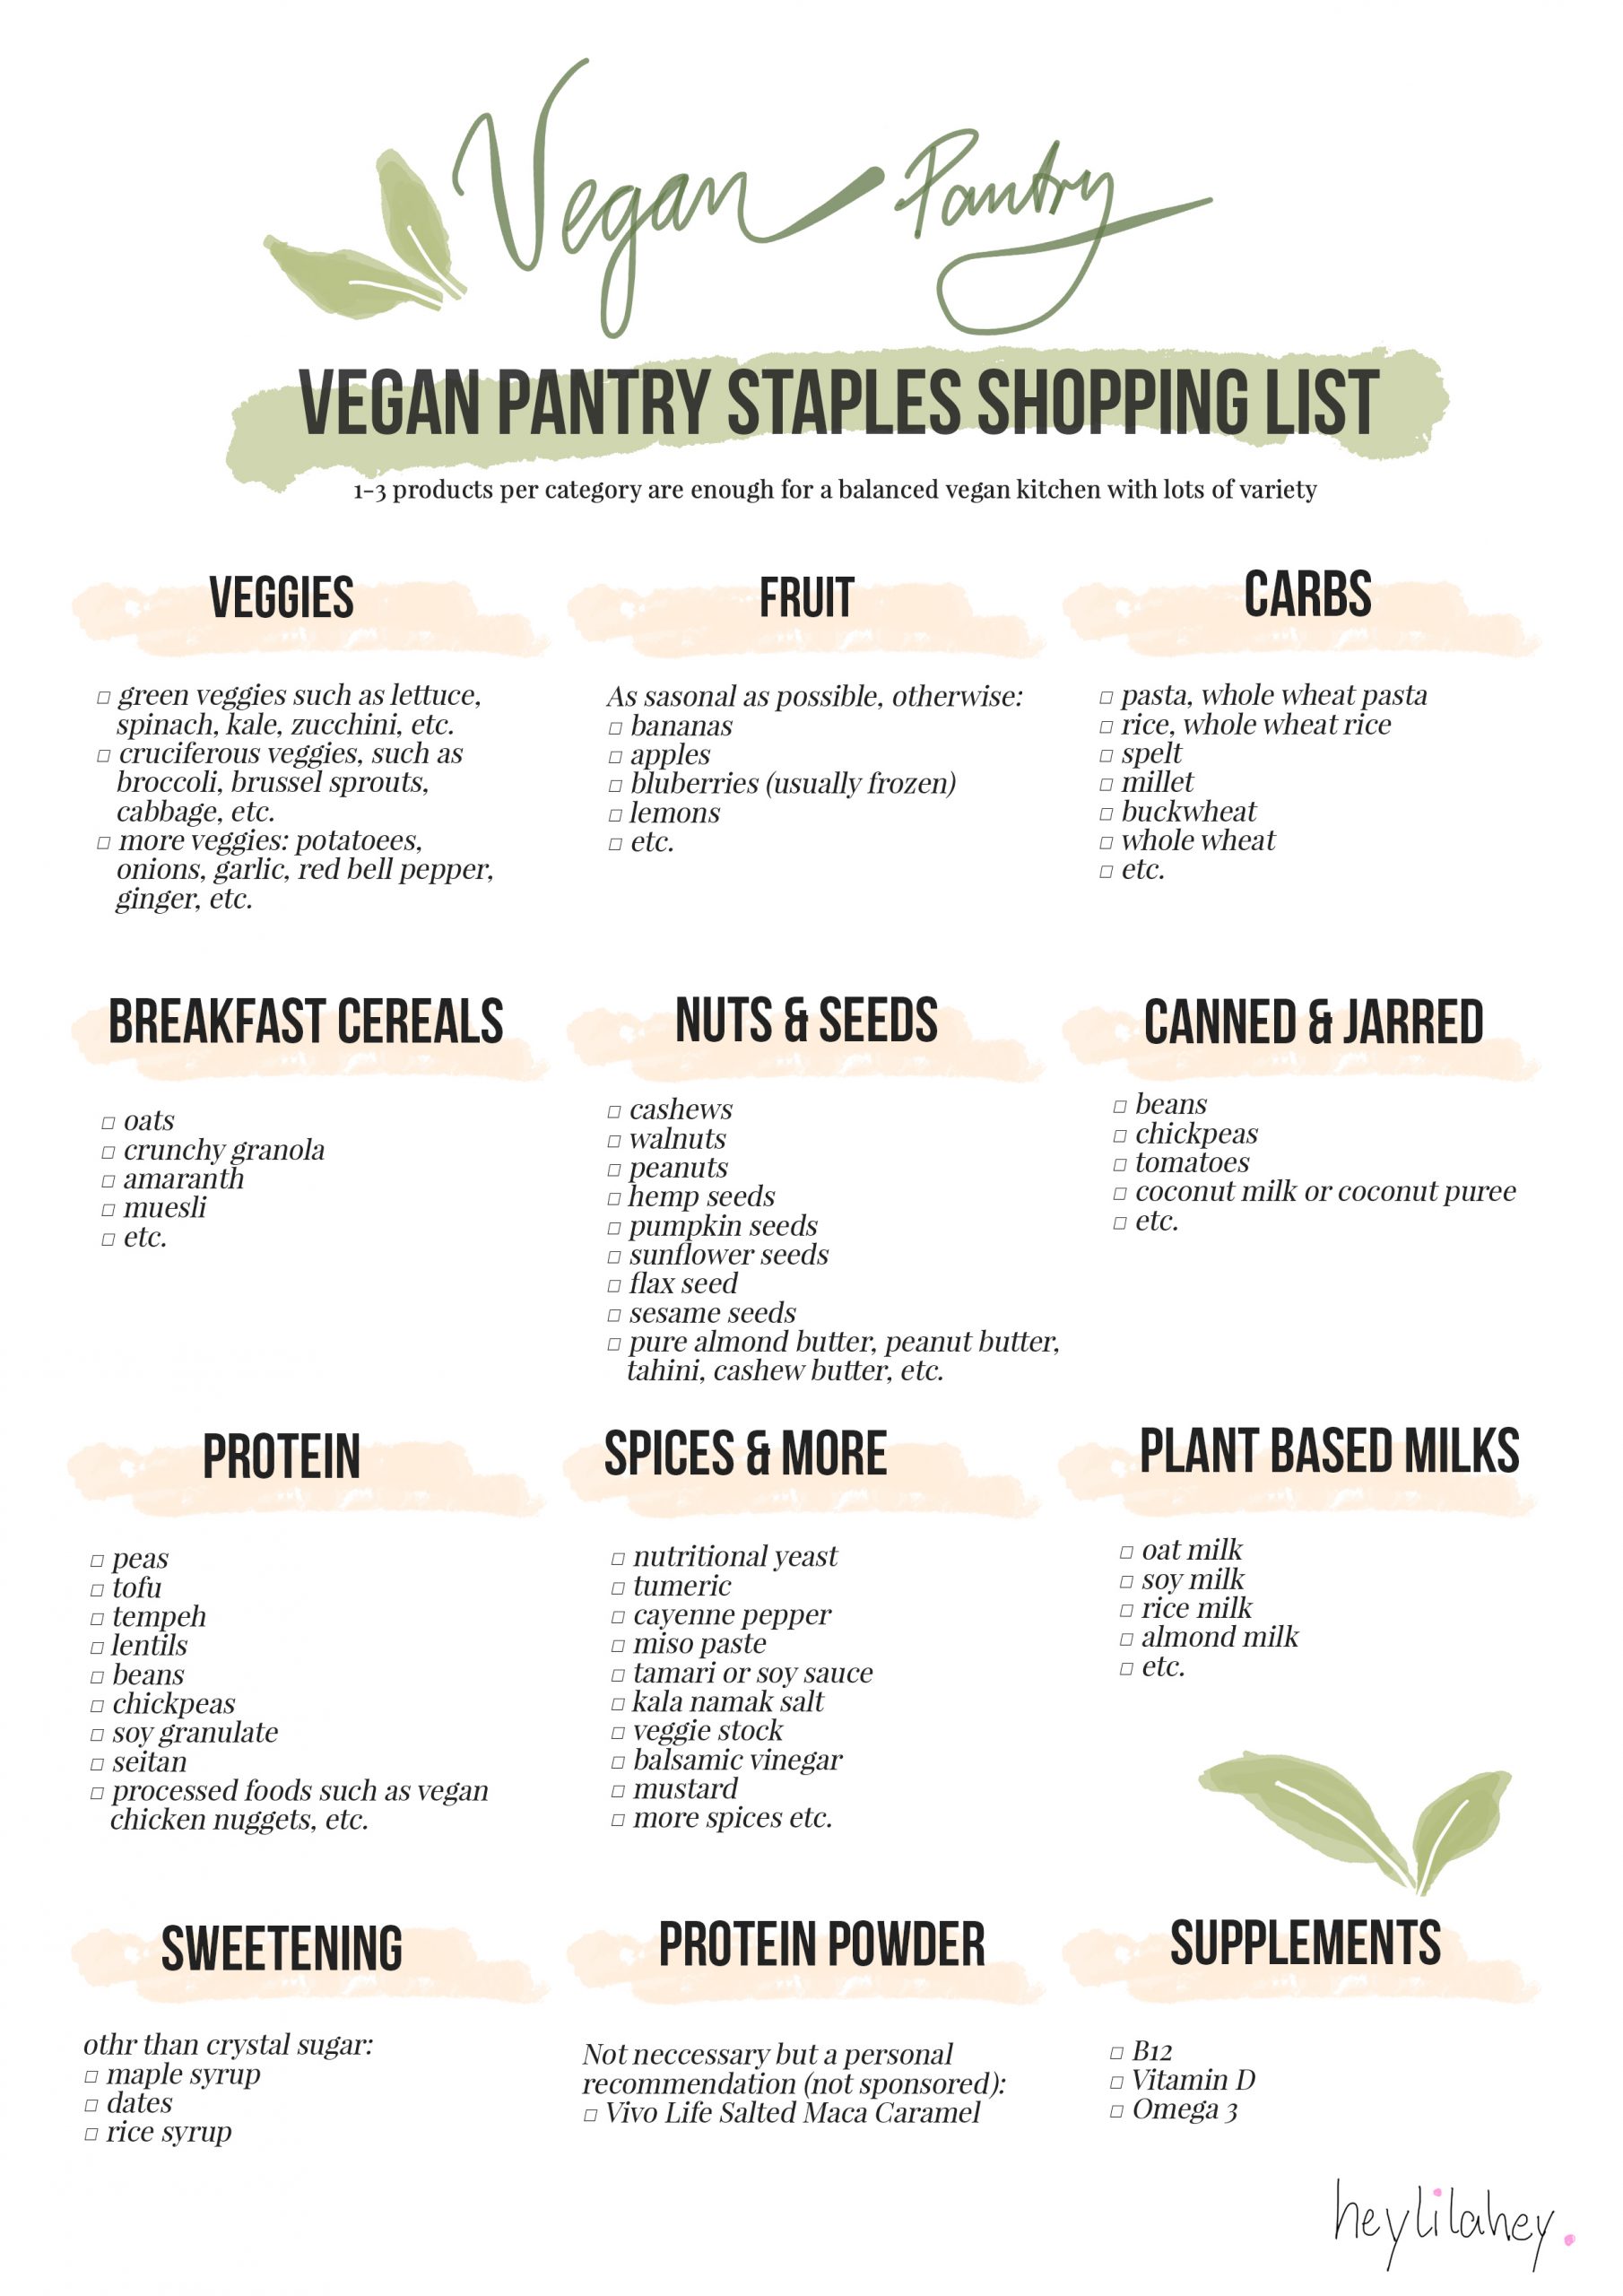 Vegan Shopping List - heylilahey.